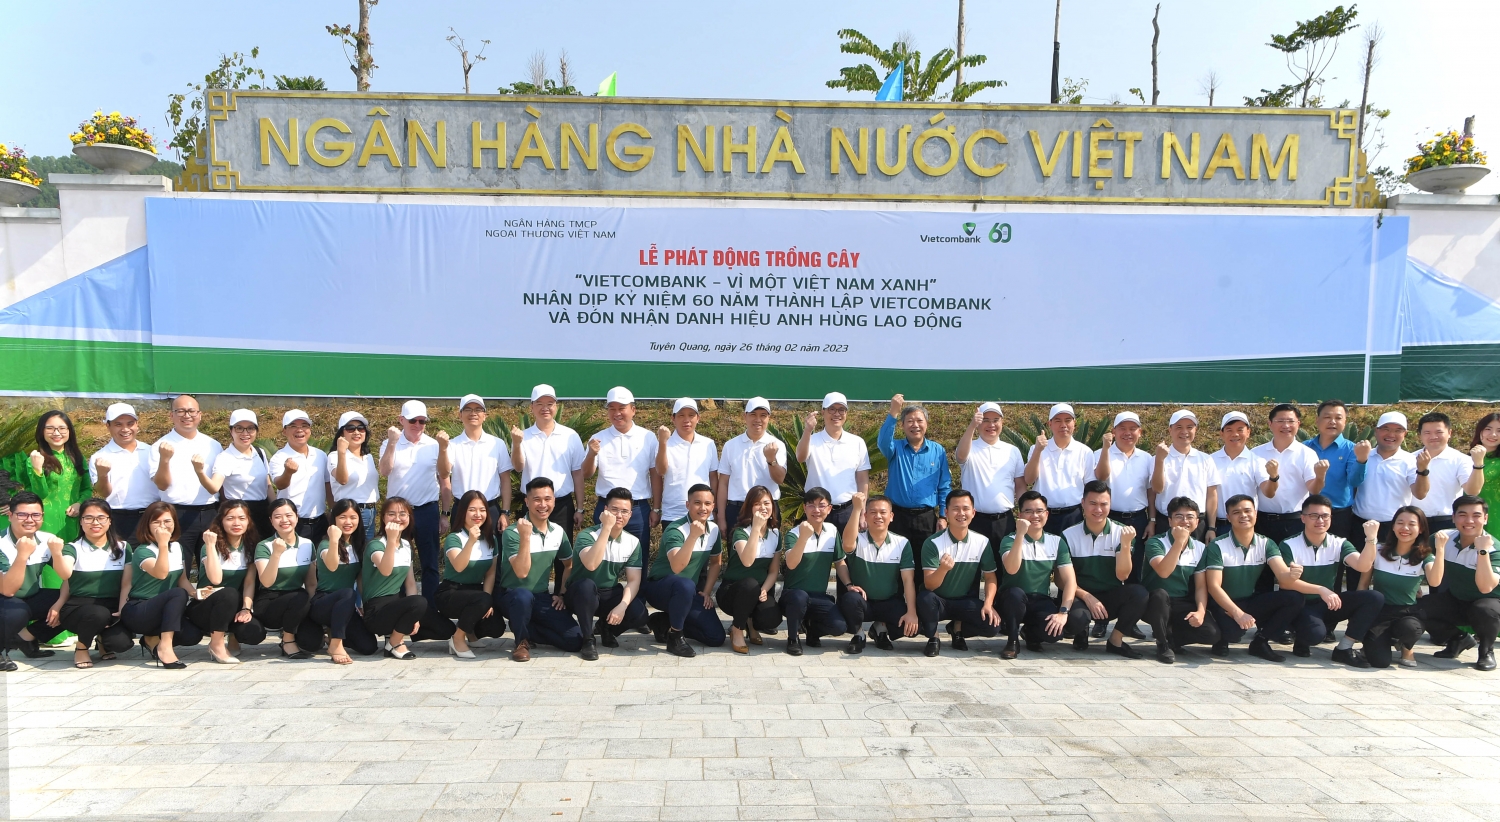 Vietcombank phát động chương trình trồng 60 nghìn cây xanh  “Vietcombank - Vì một Việt Nam xanh”